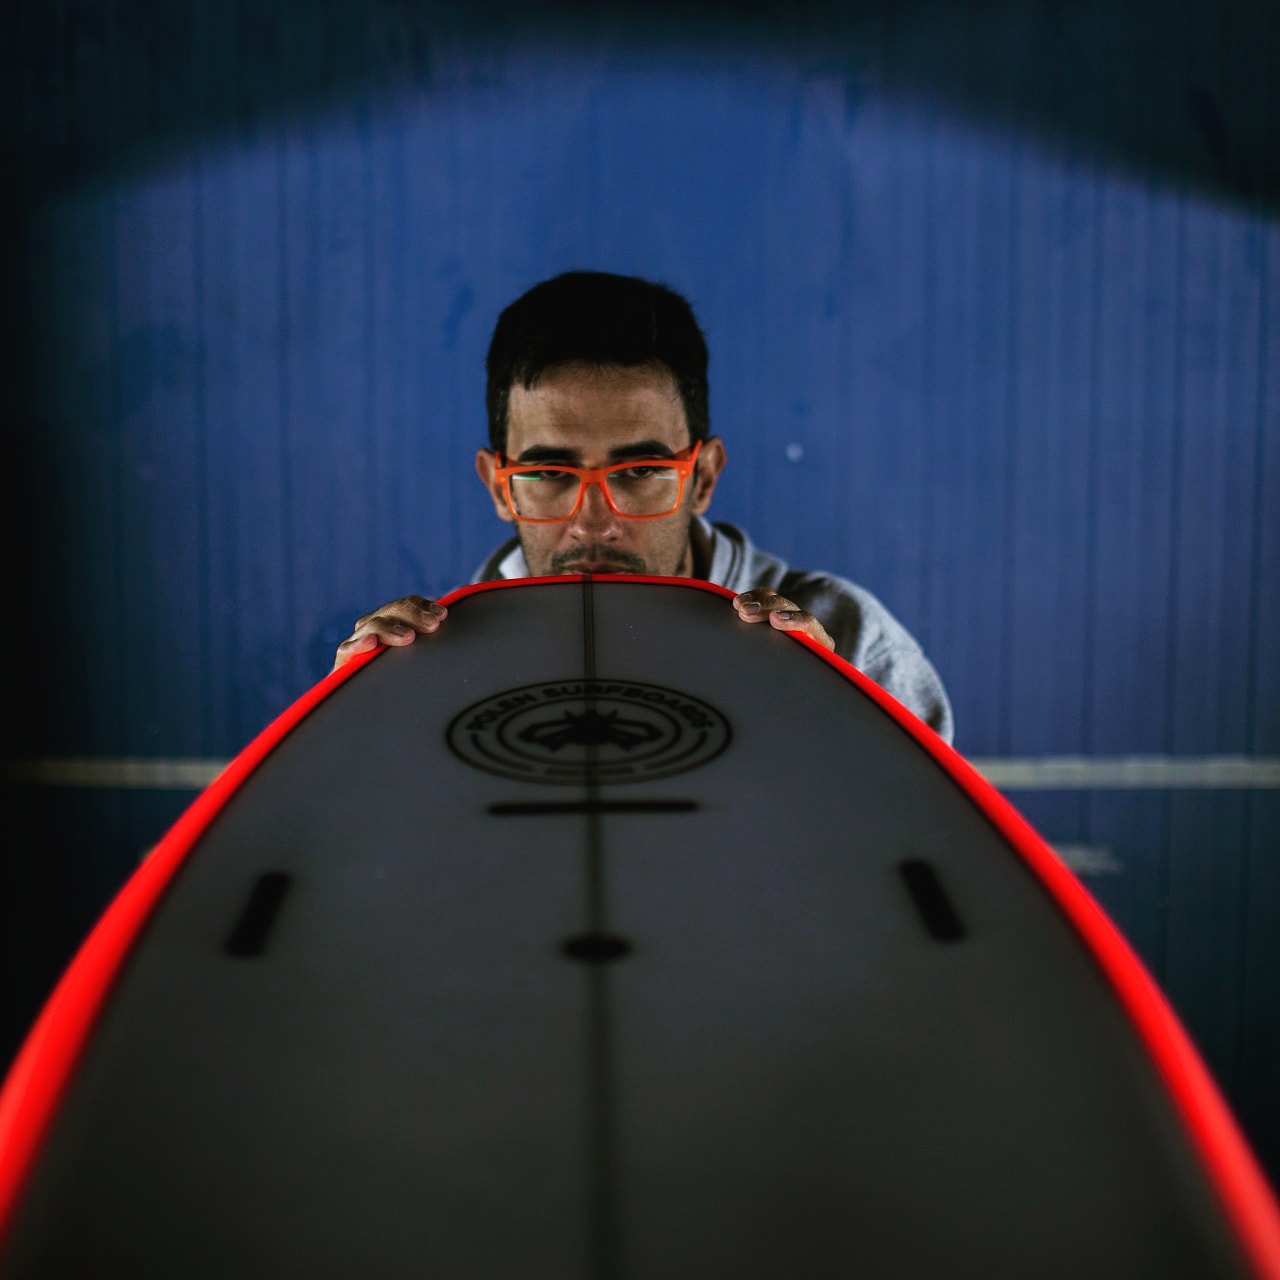 Nuno deixa competições de surf aos 44 anos após vida de luta: “Com